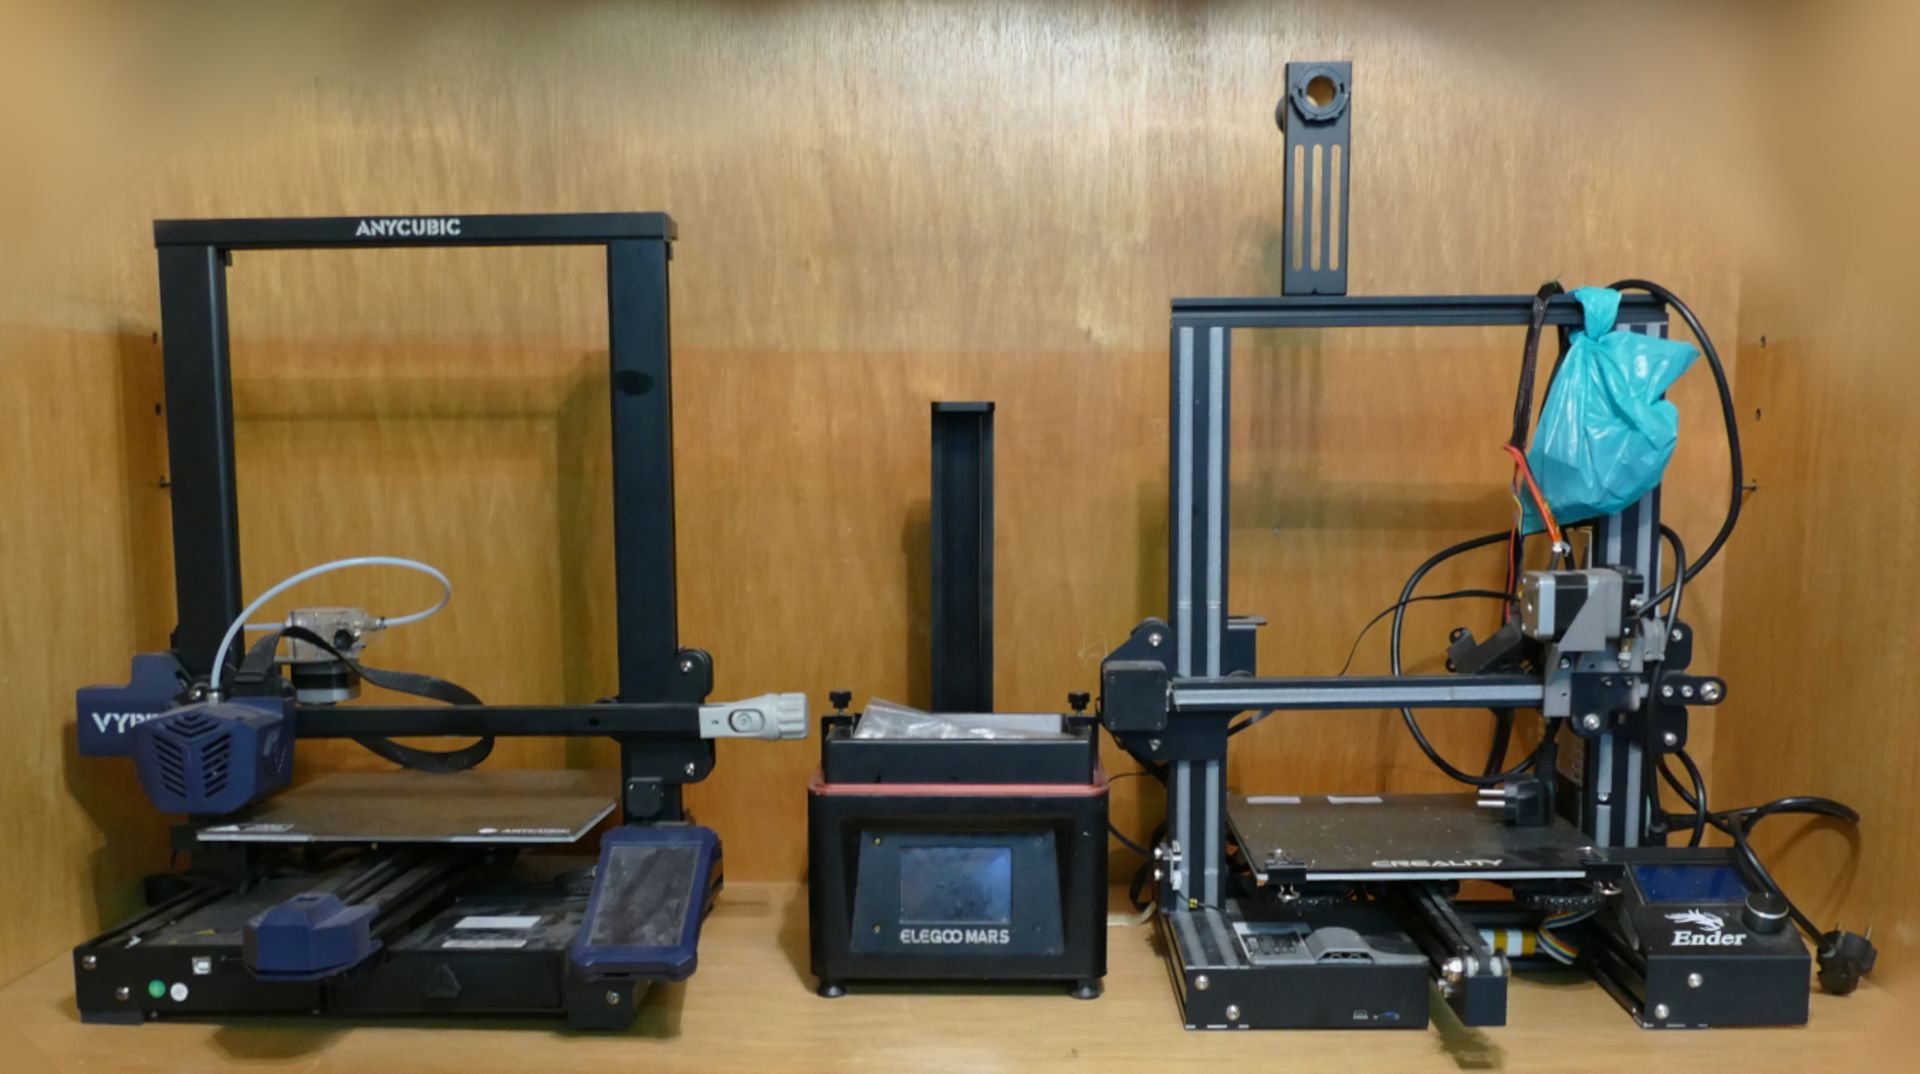 4 Maschinen: 3x 3D-Drucker: ANYCUBIC "Vyper" und CREALITY "Ender 3", ELEGOO "Mars" sowie 1 Laserschn